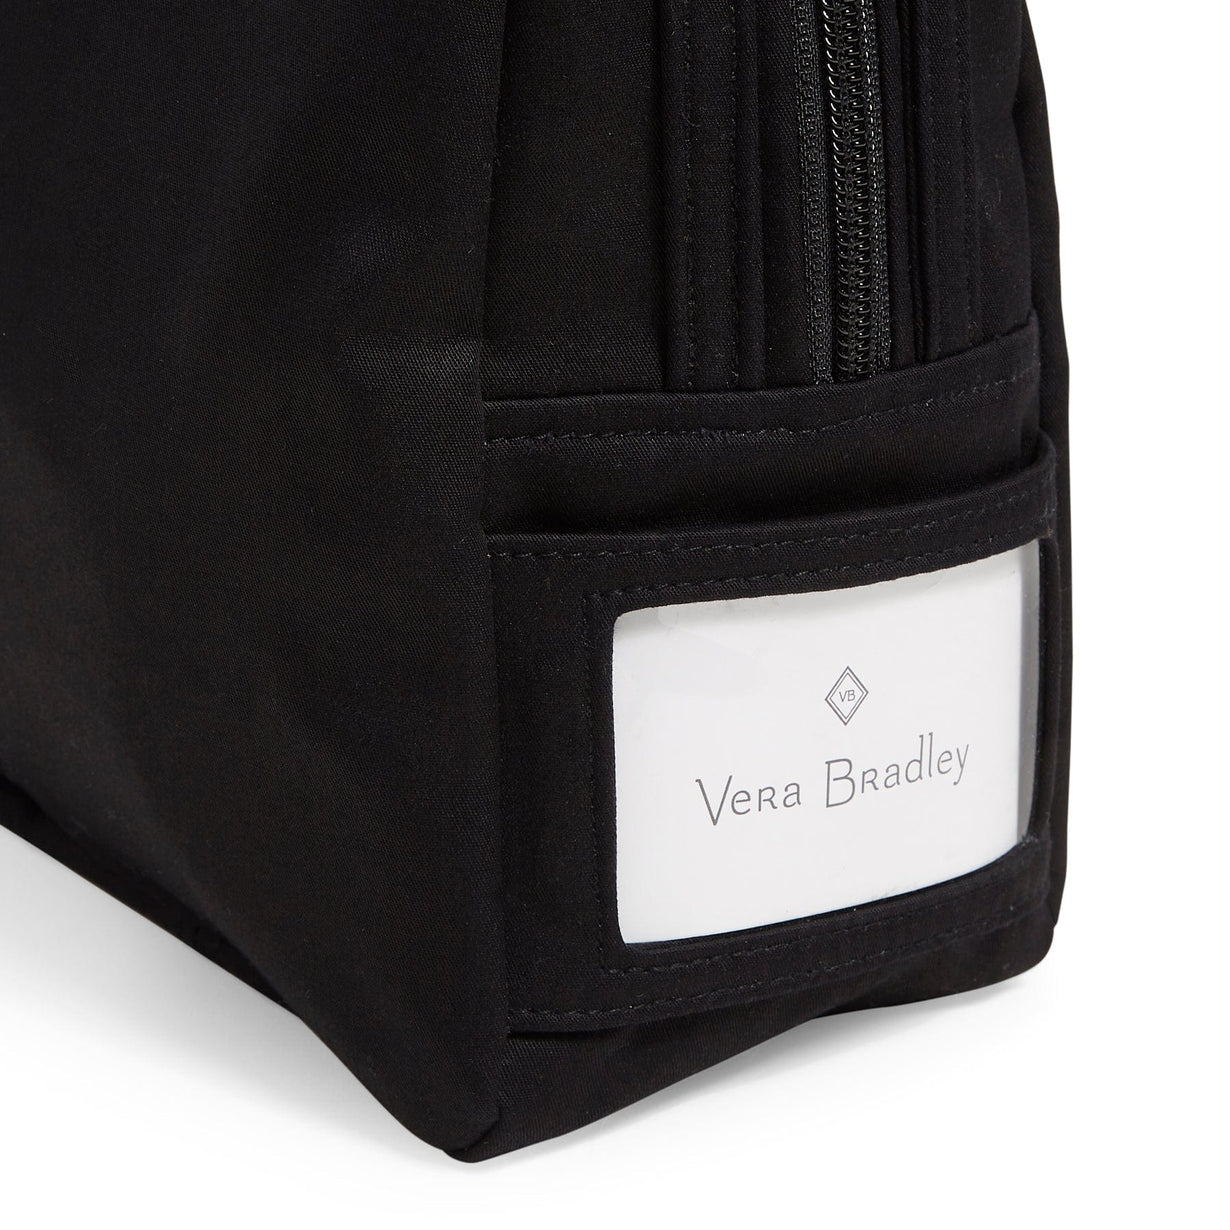 Vera Bradley Lunch Bunch Bag in Galaxy Gray – SierraLily